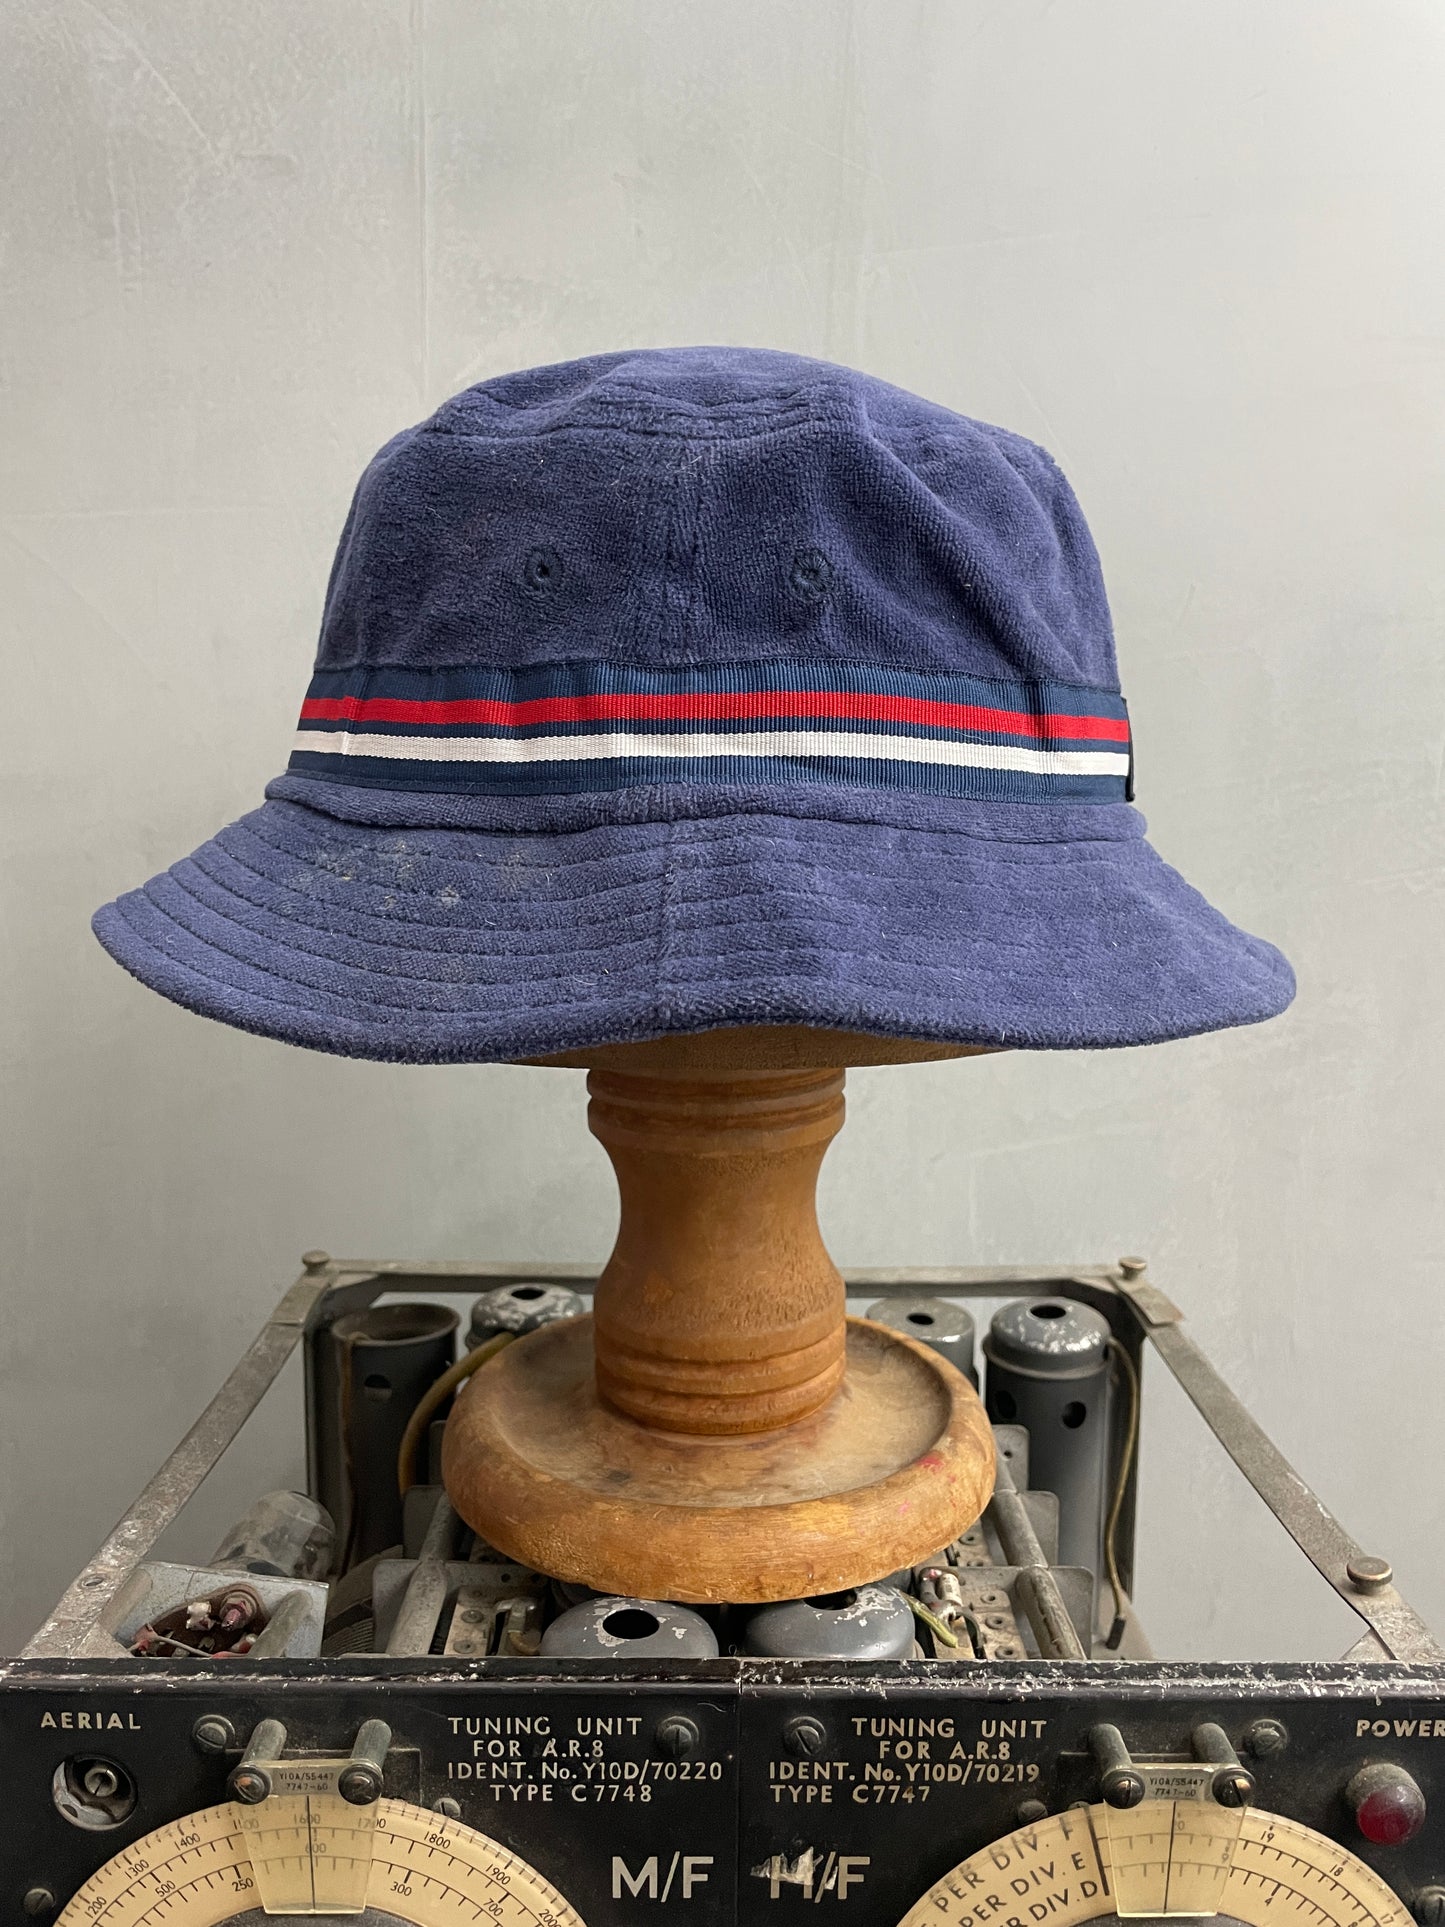 Fila Bucket Hat